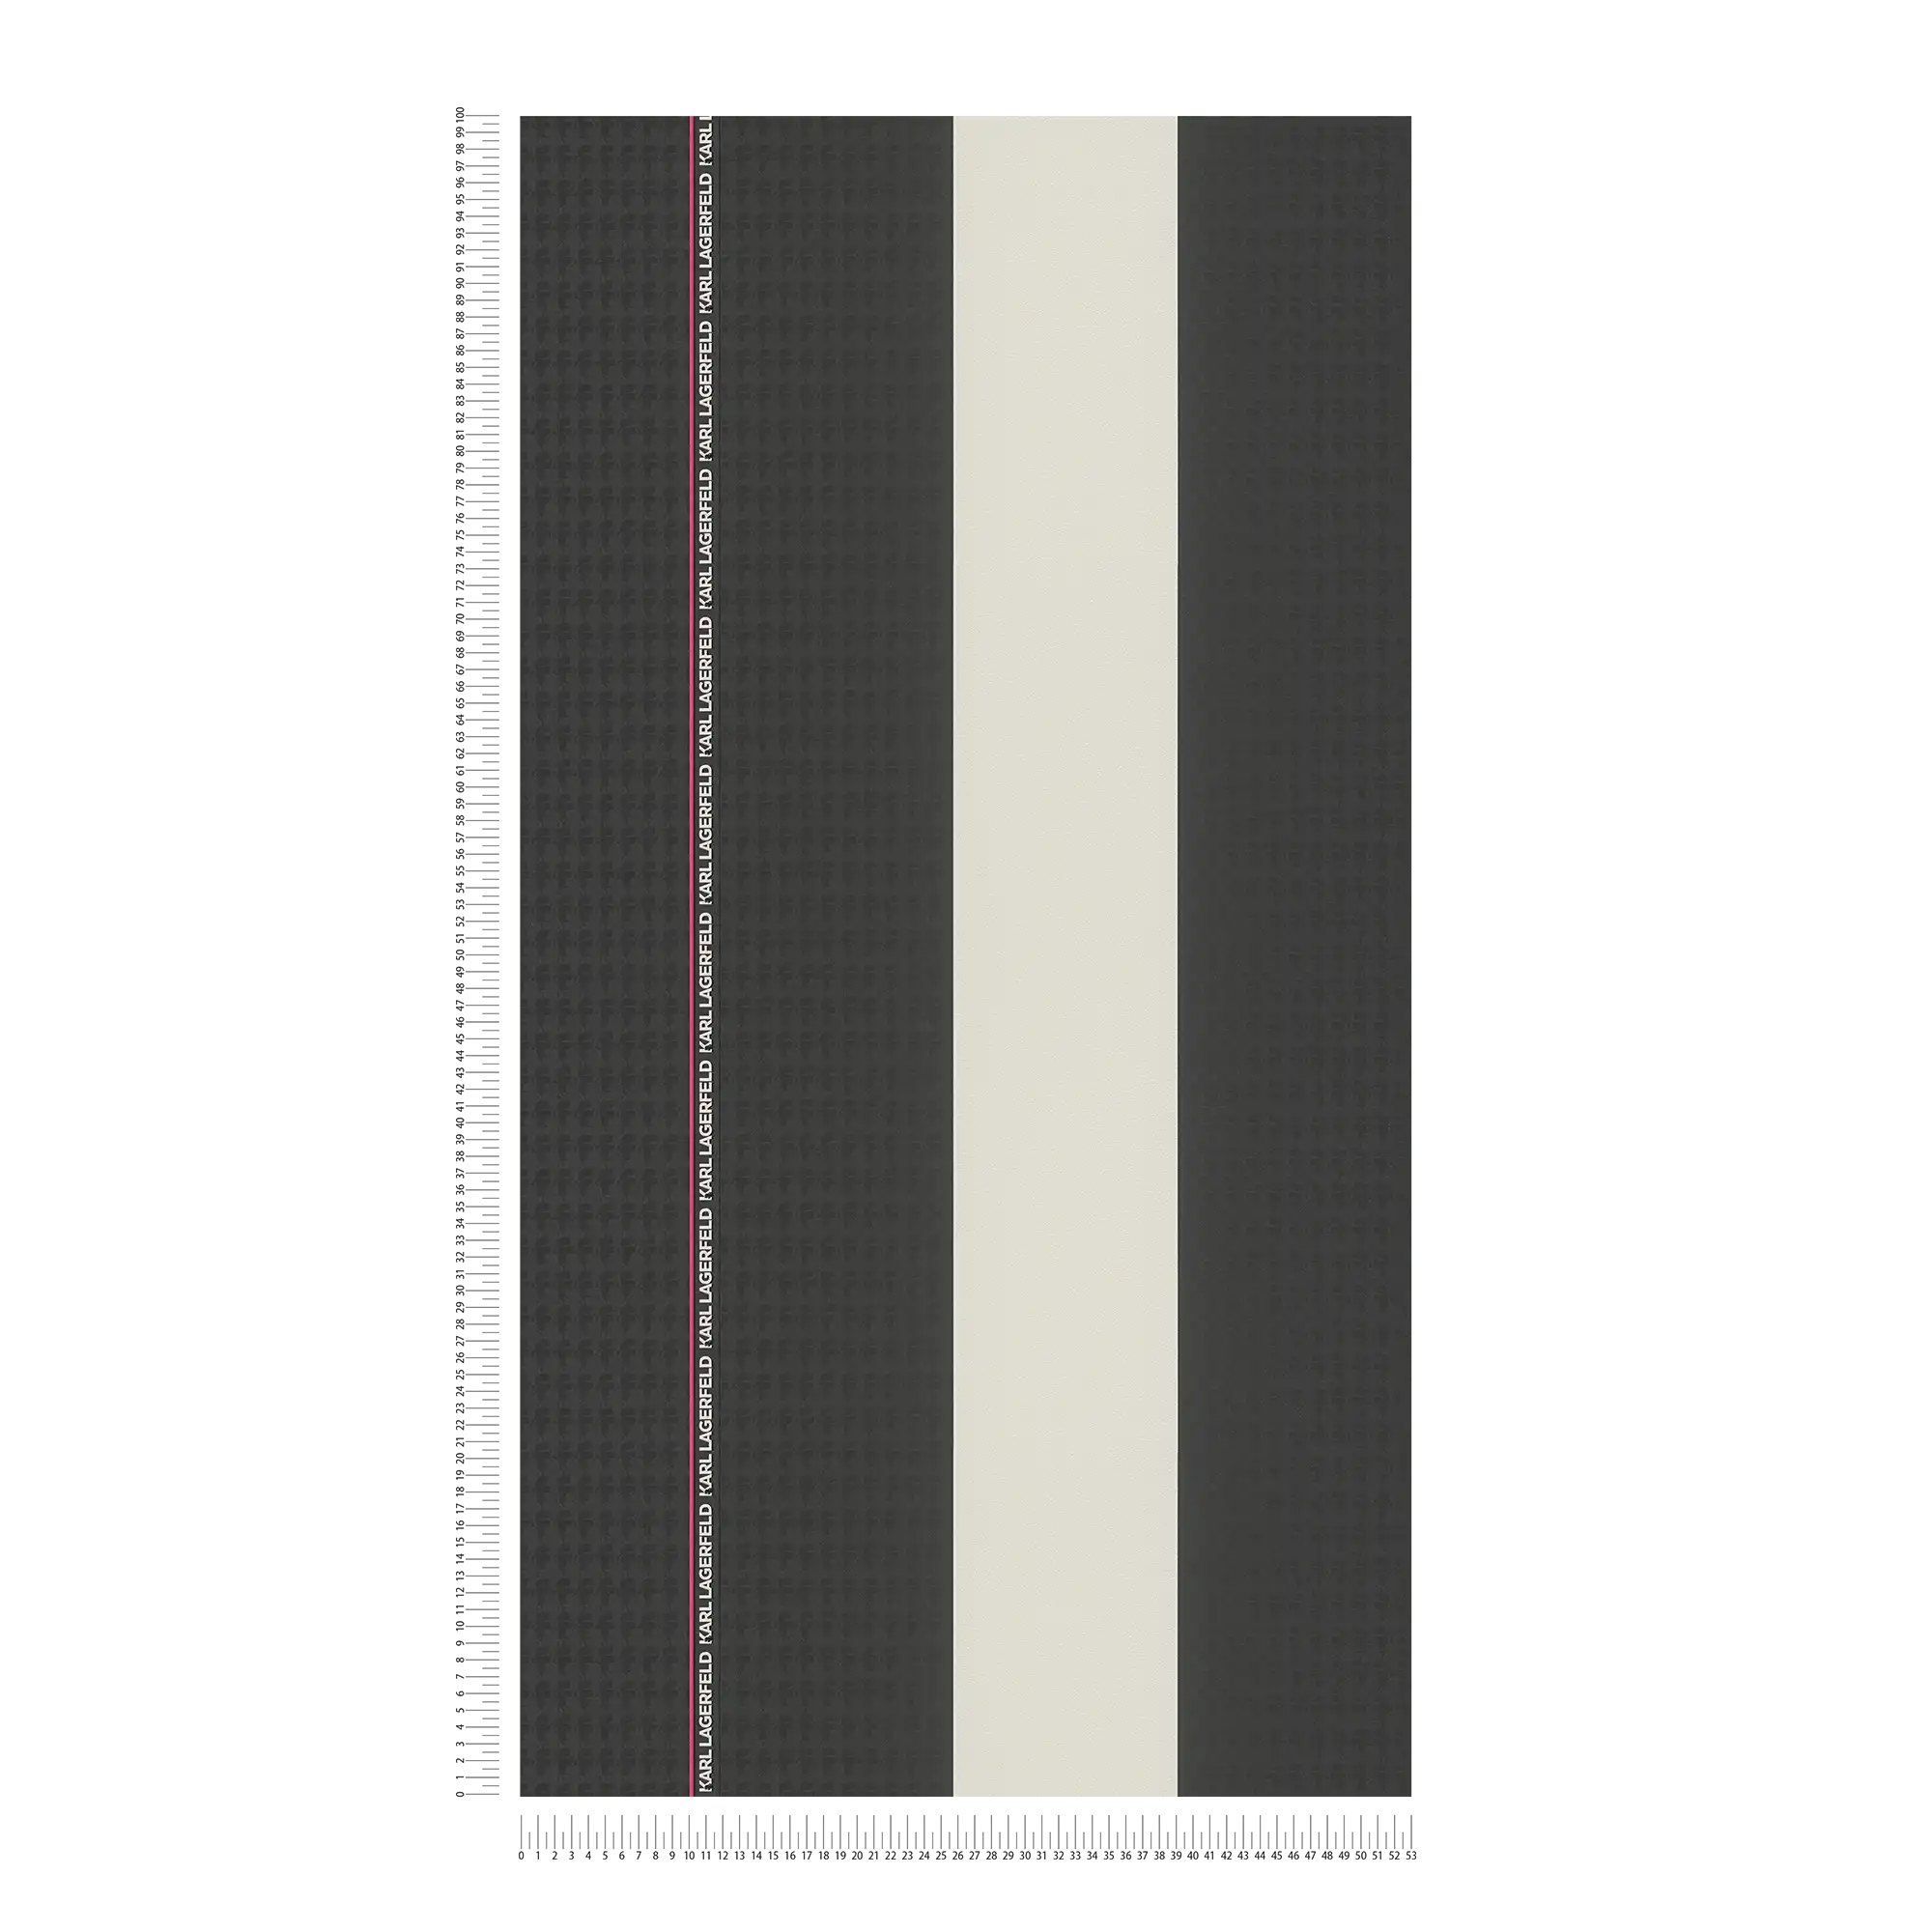             Karl LAGERFELD vliesbehangstroken met textuureffect - zwart, wit
        